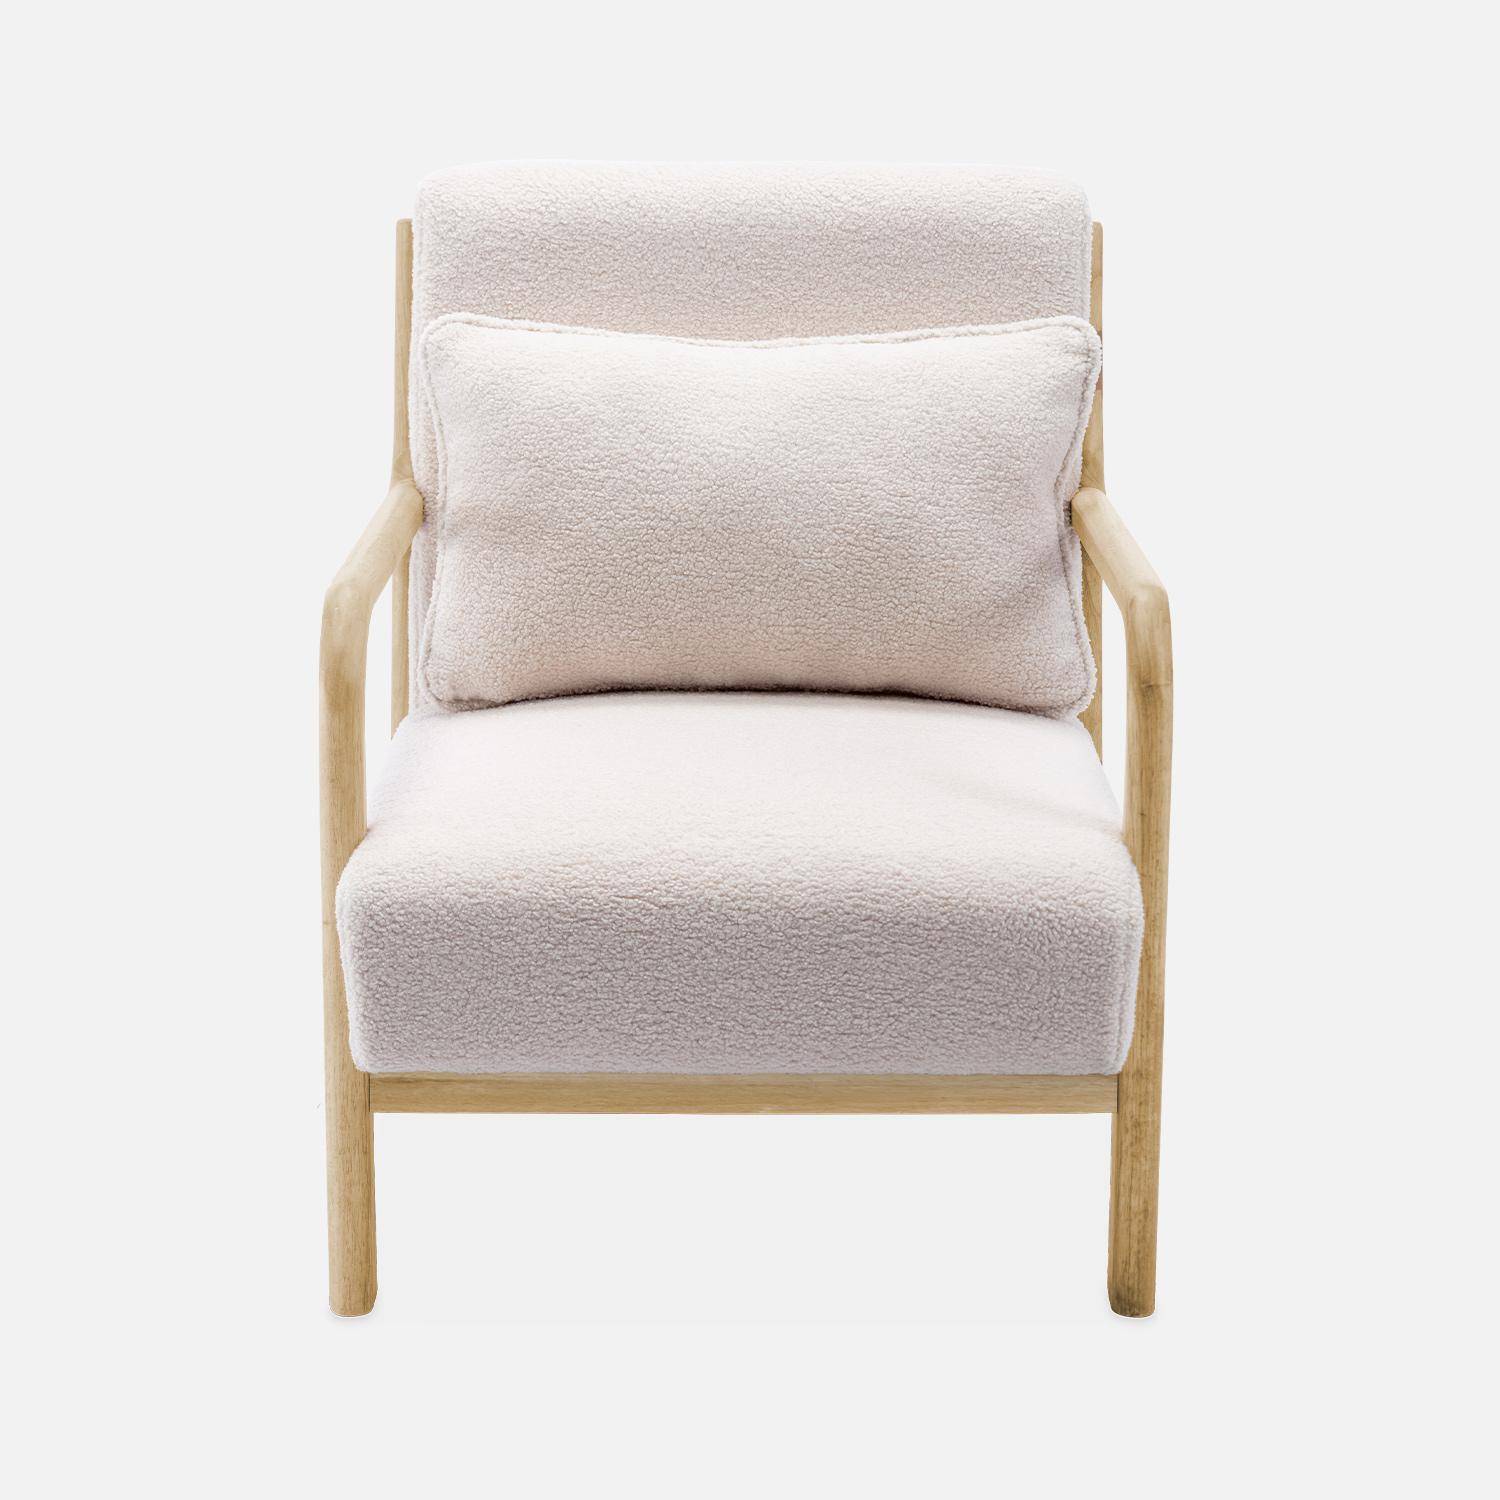 Sillón de rizos blancos, madera y tela, 1 asiento recto fijo, patas de compás escandinavas, armazón de madera maciza, asiento cómodo Photo5